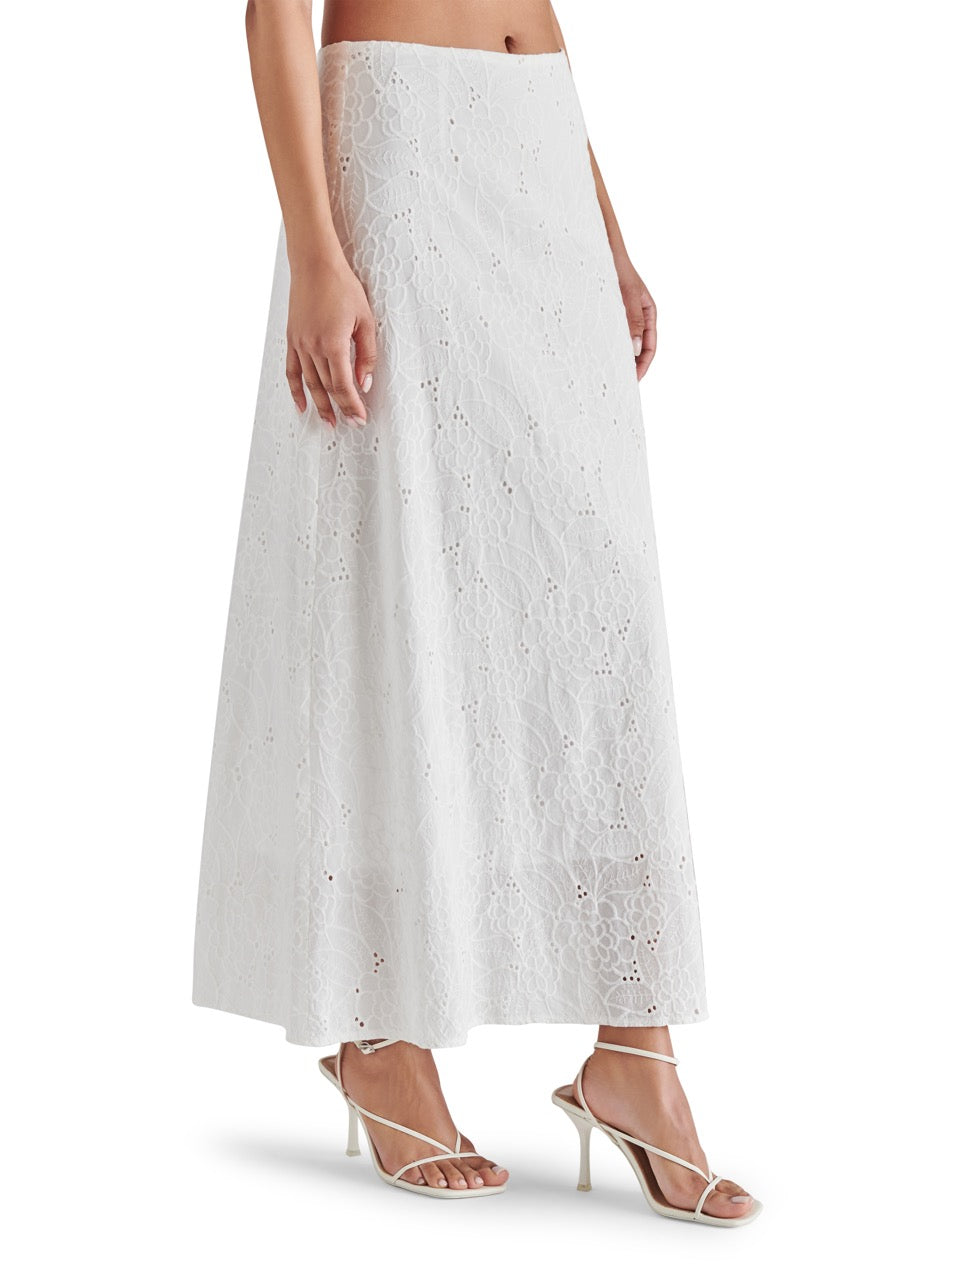 steve madden amalia skirt in white-side view